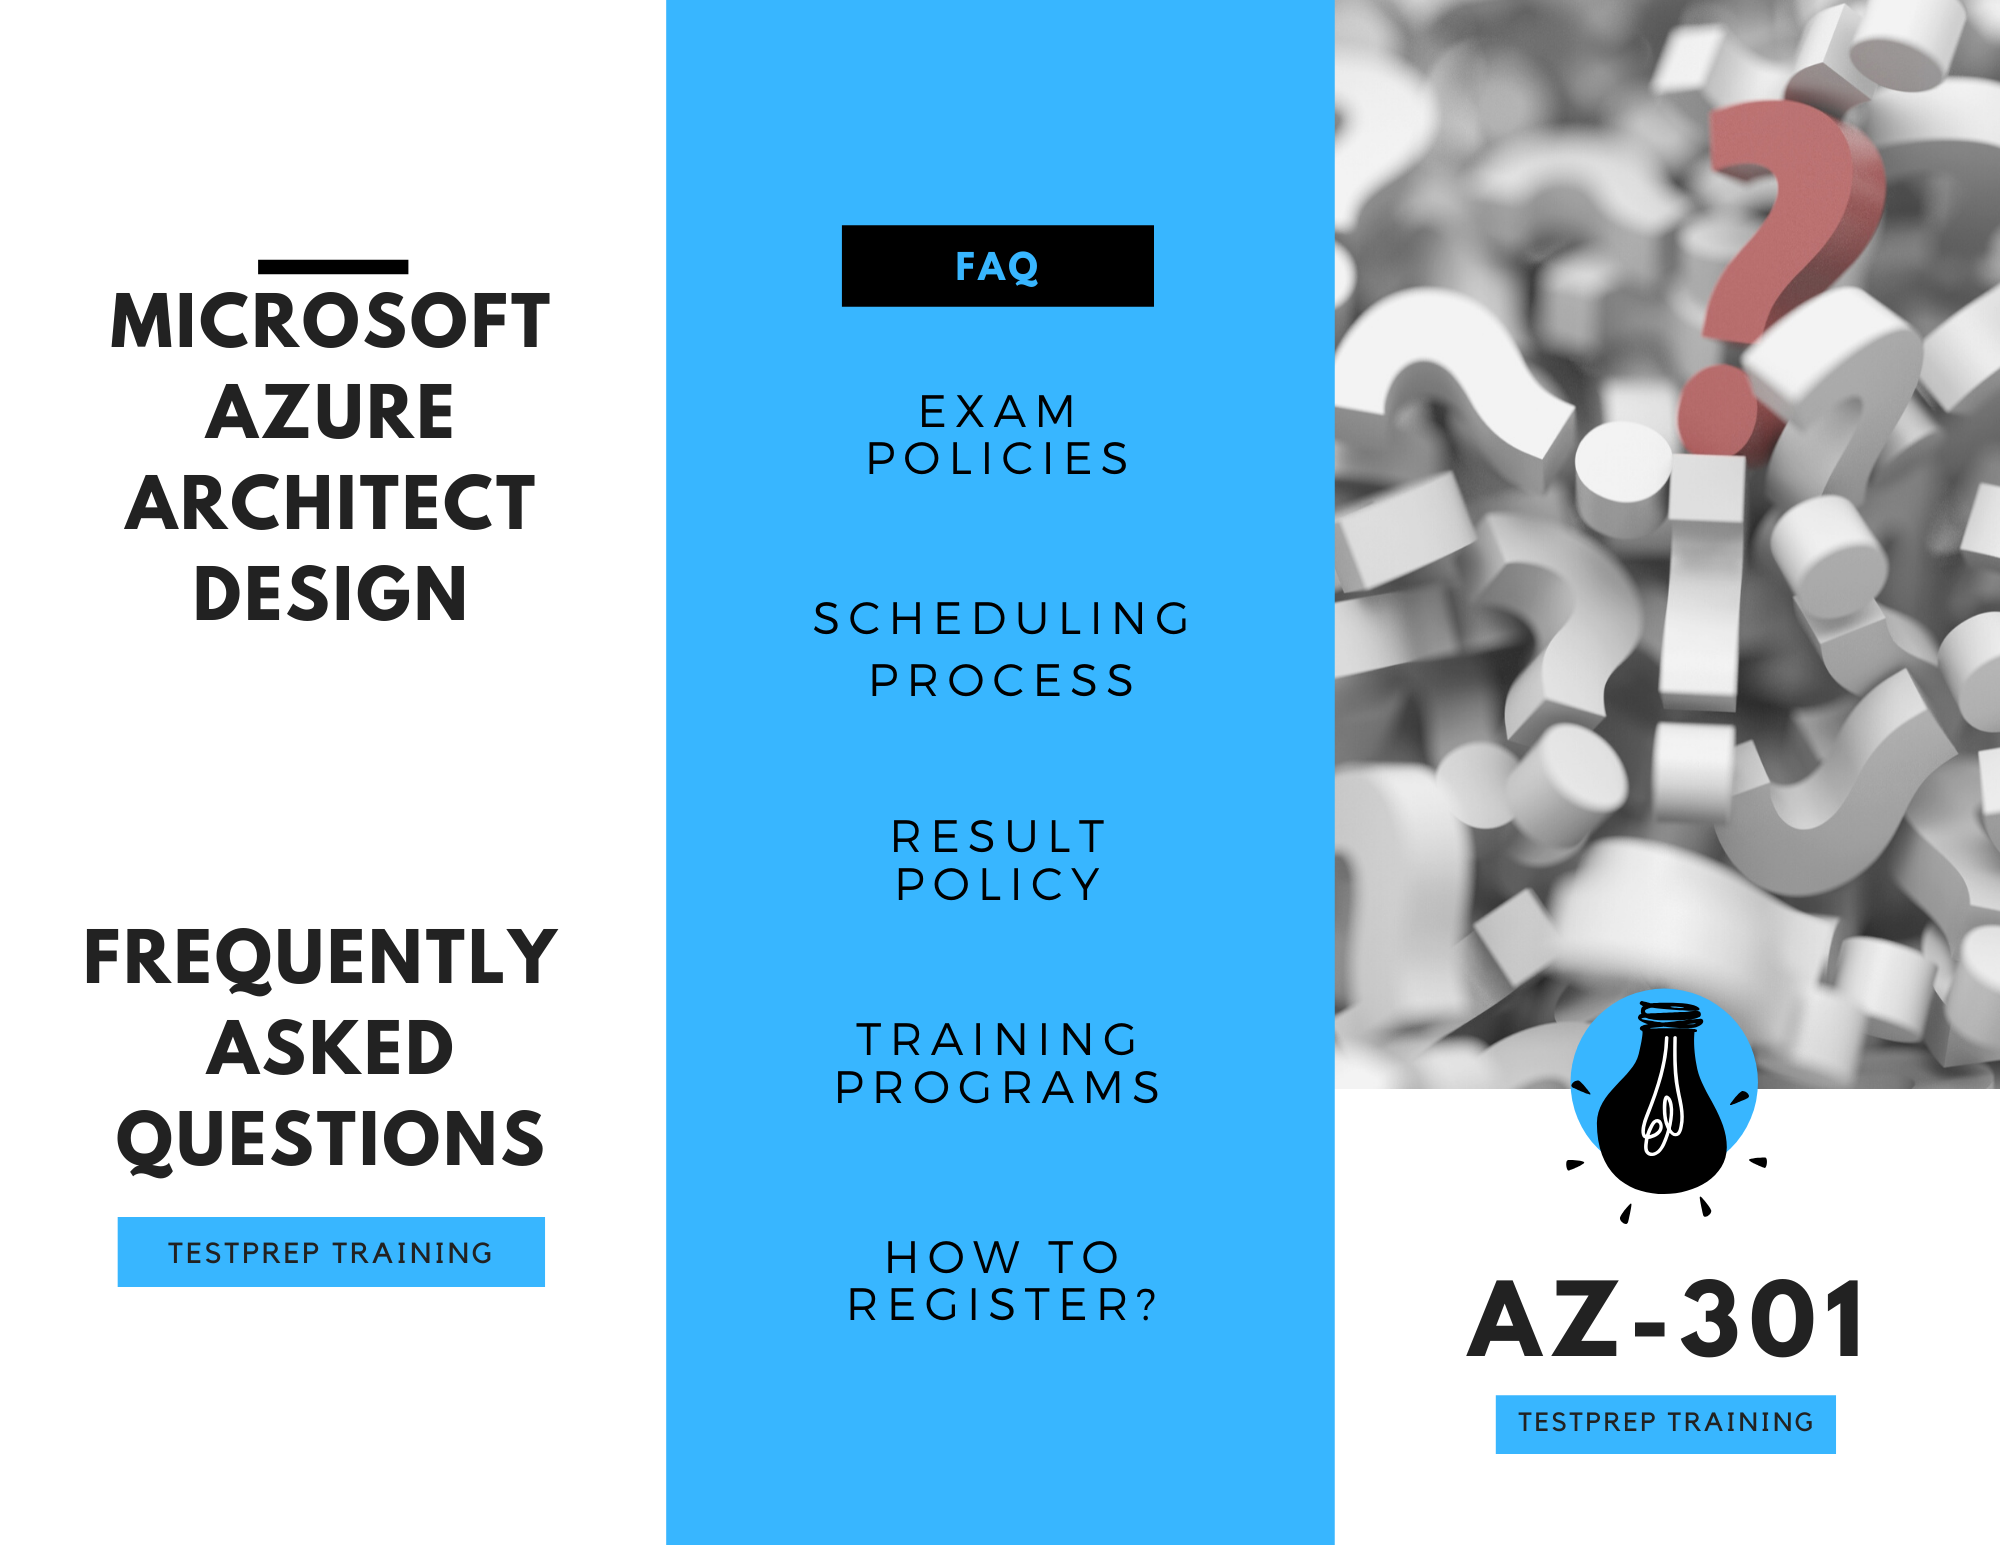 Microsoft Azure Architect Design az-301 FAQ